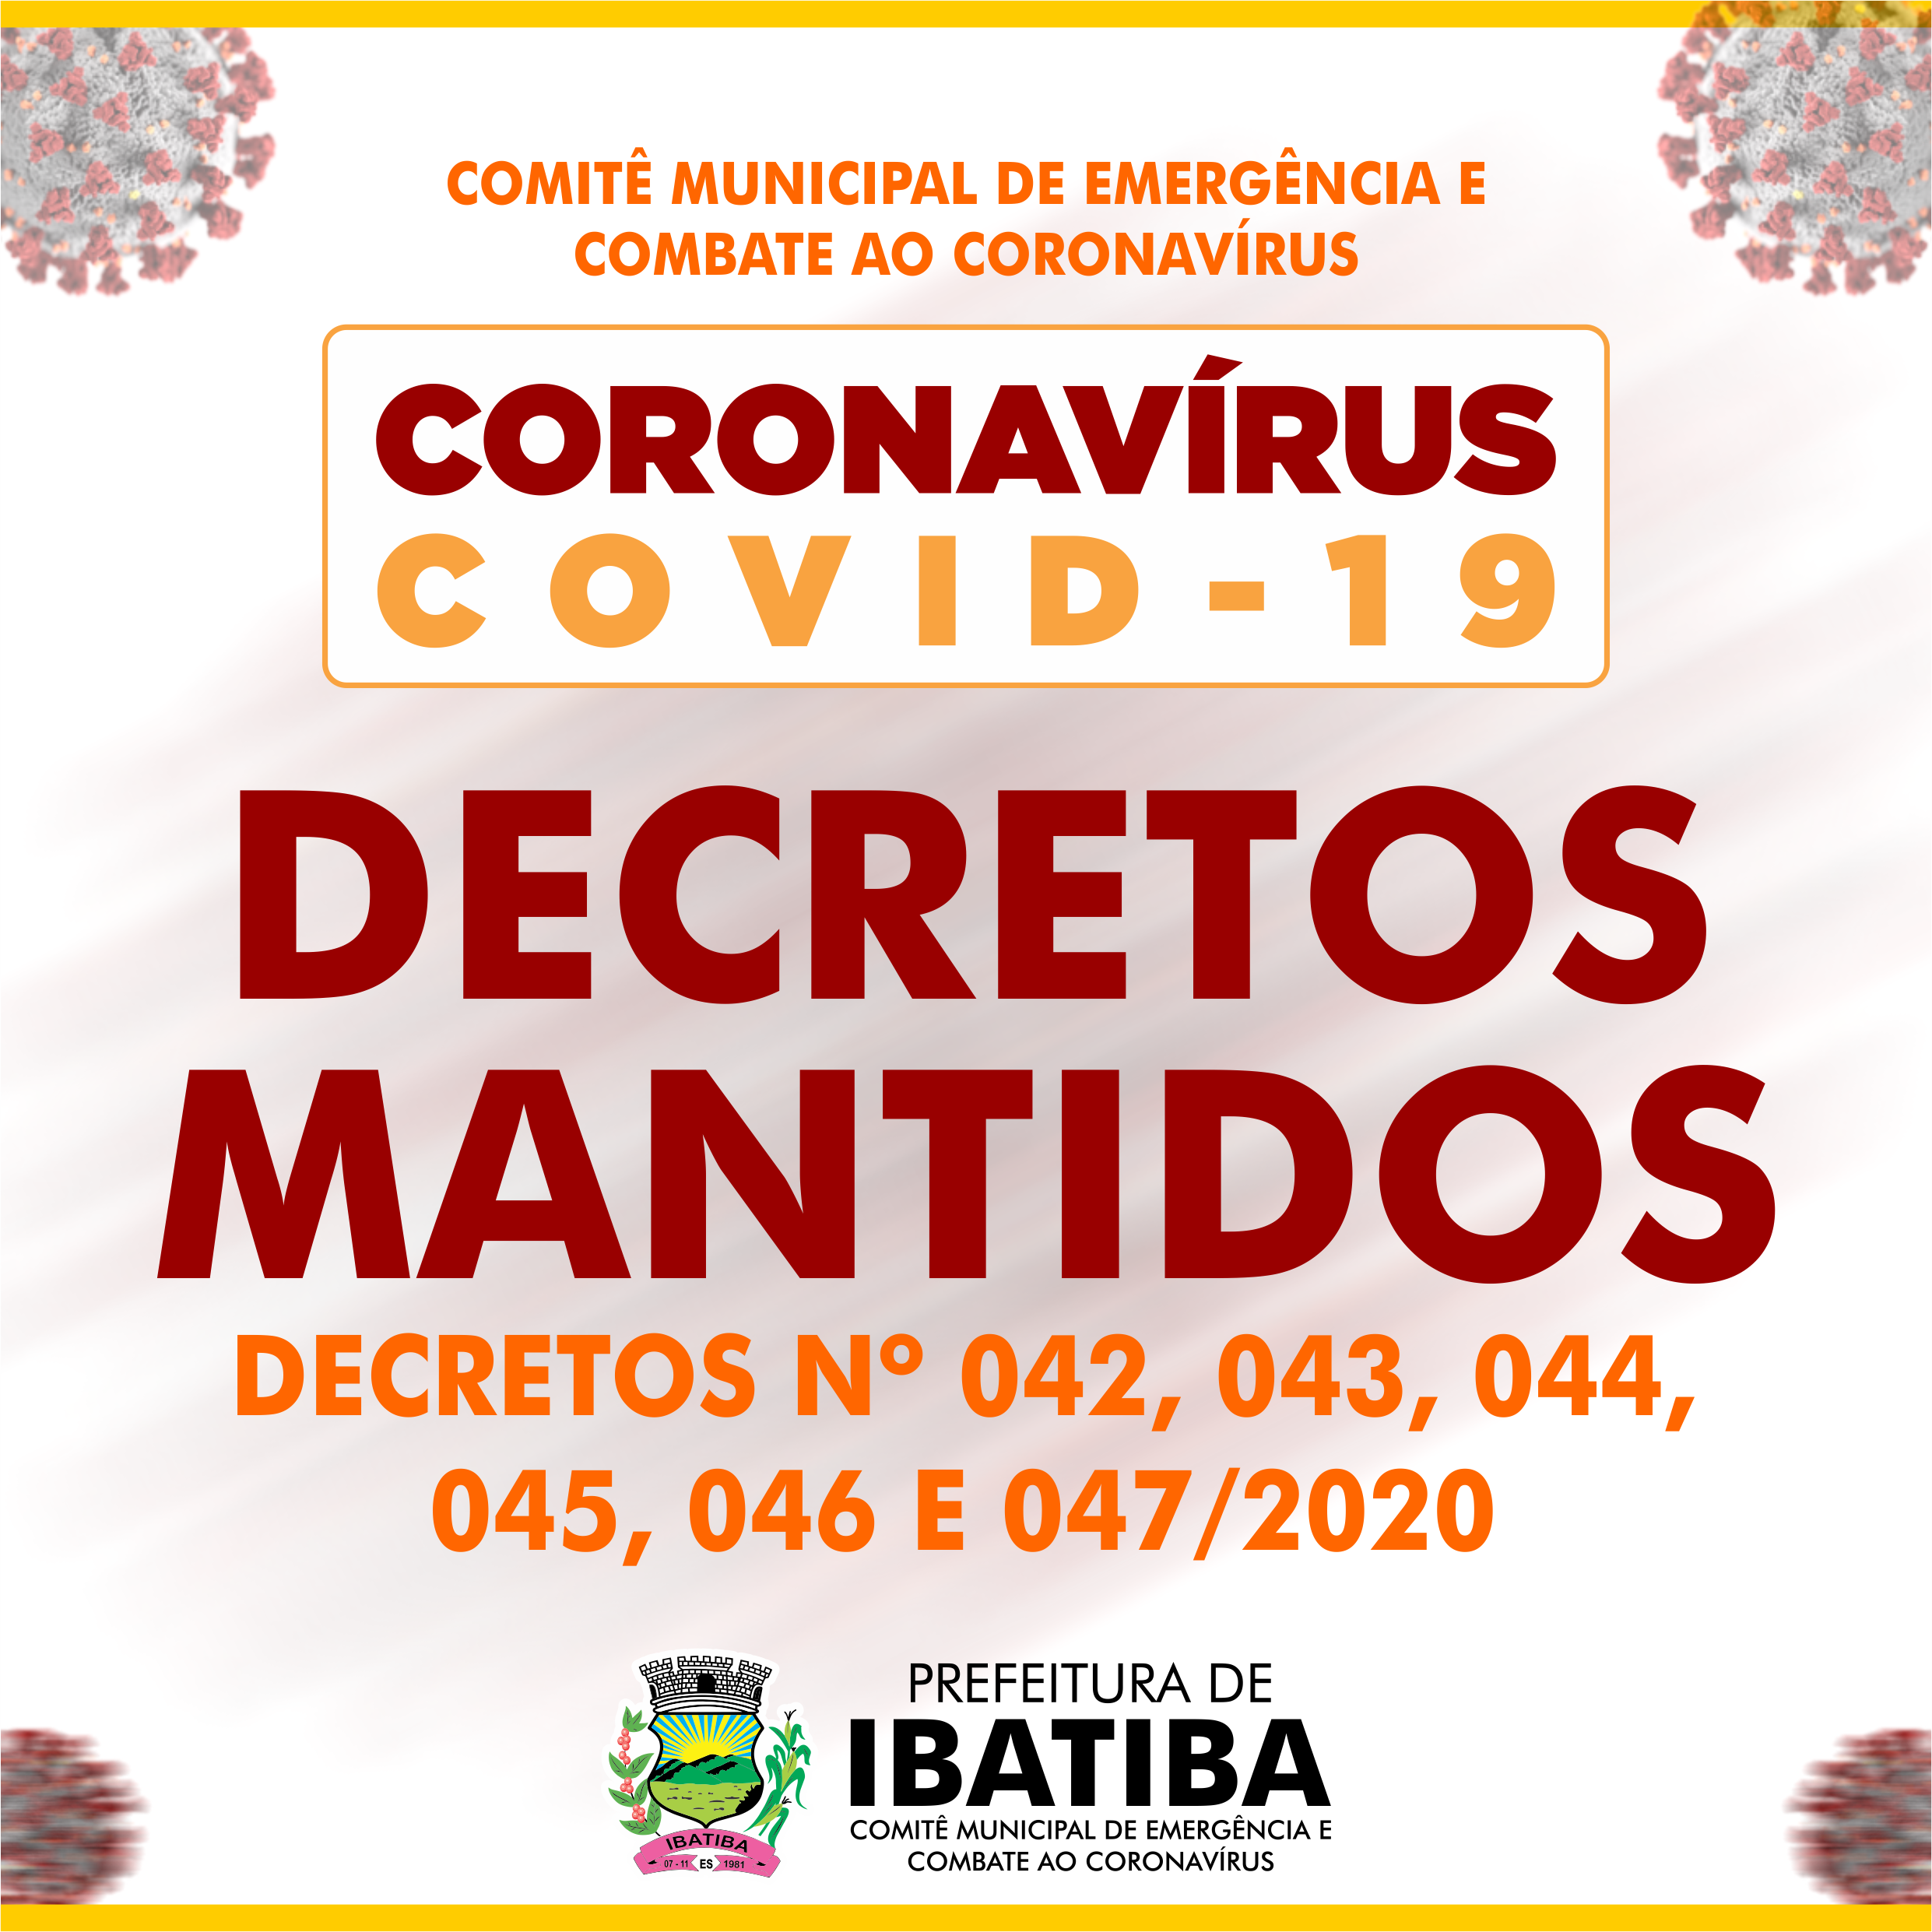 Comitê Municipal de Emergência e Combate ao Coronavírus define manter Decretos